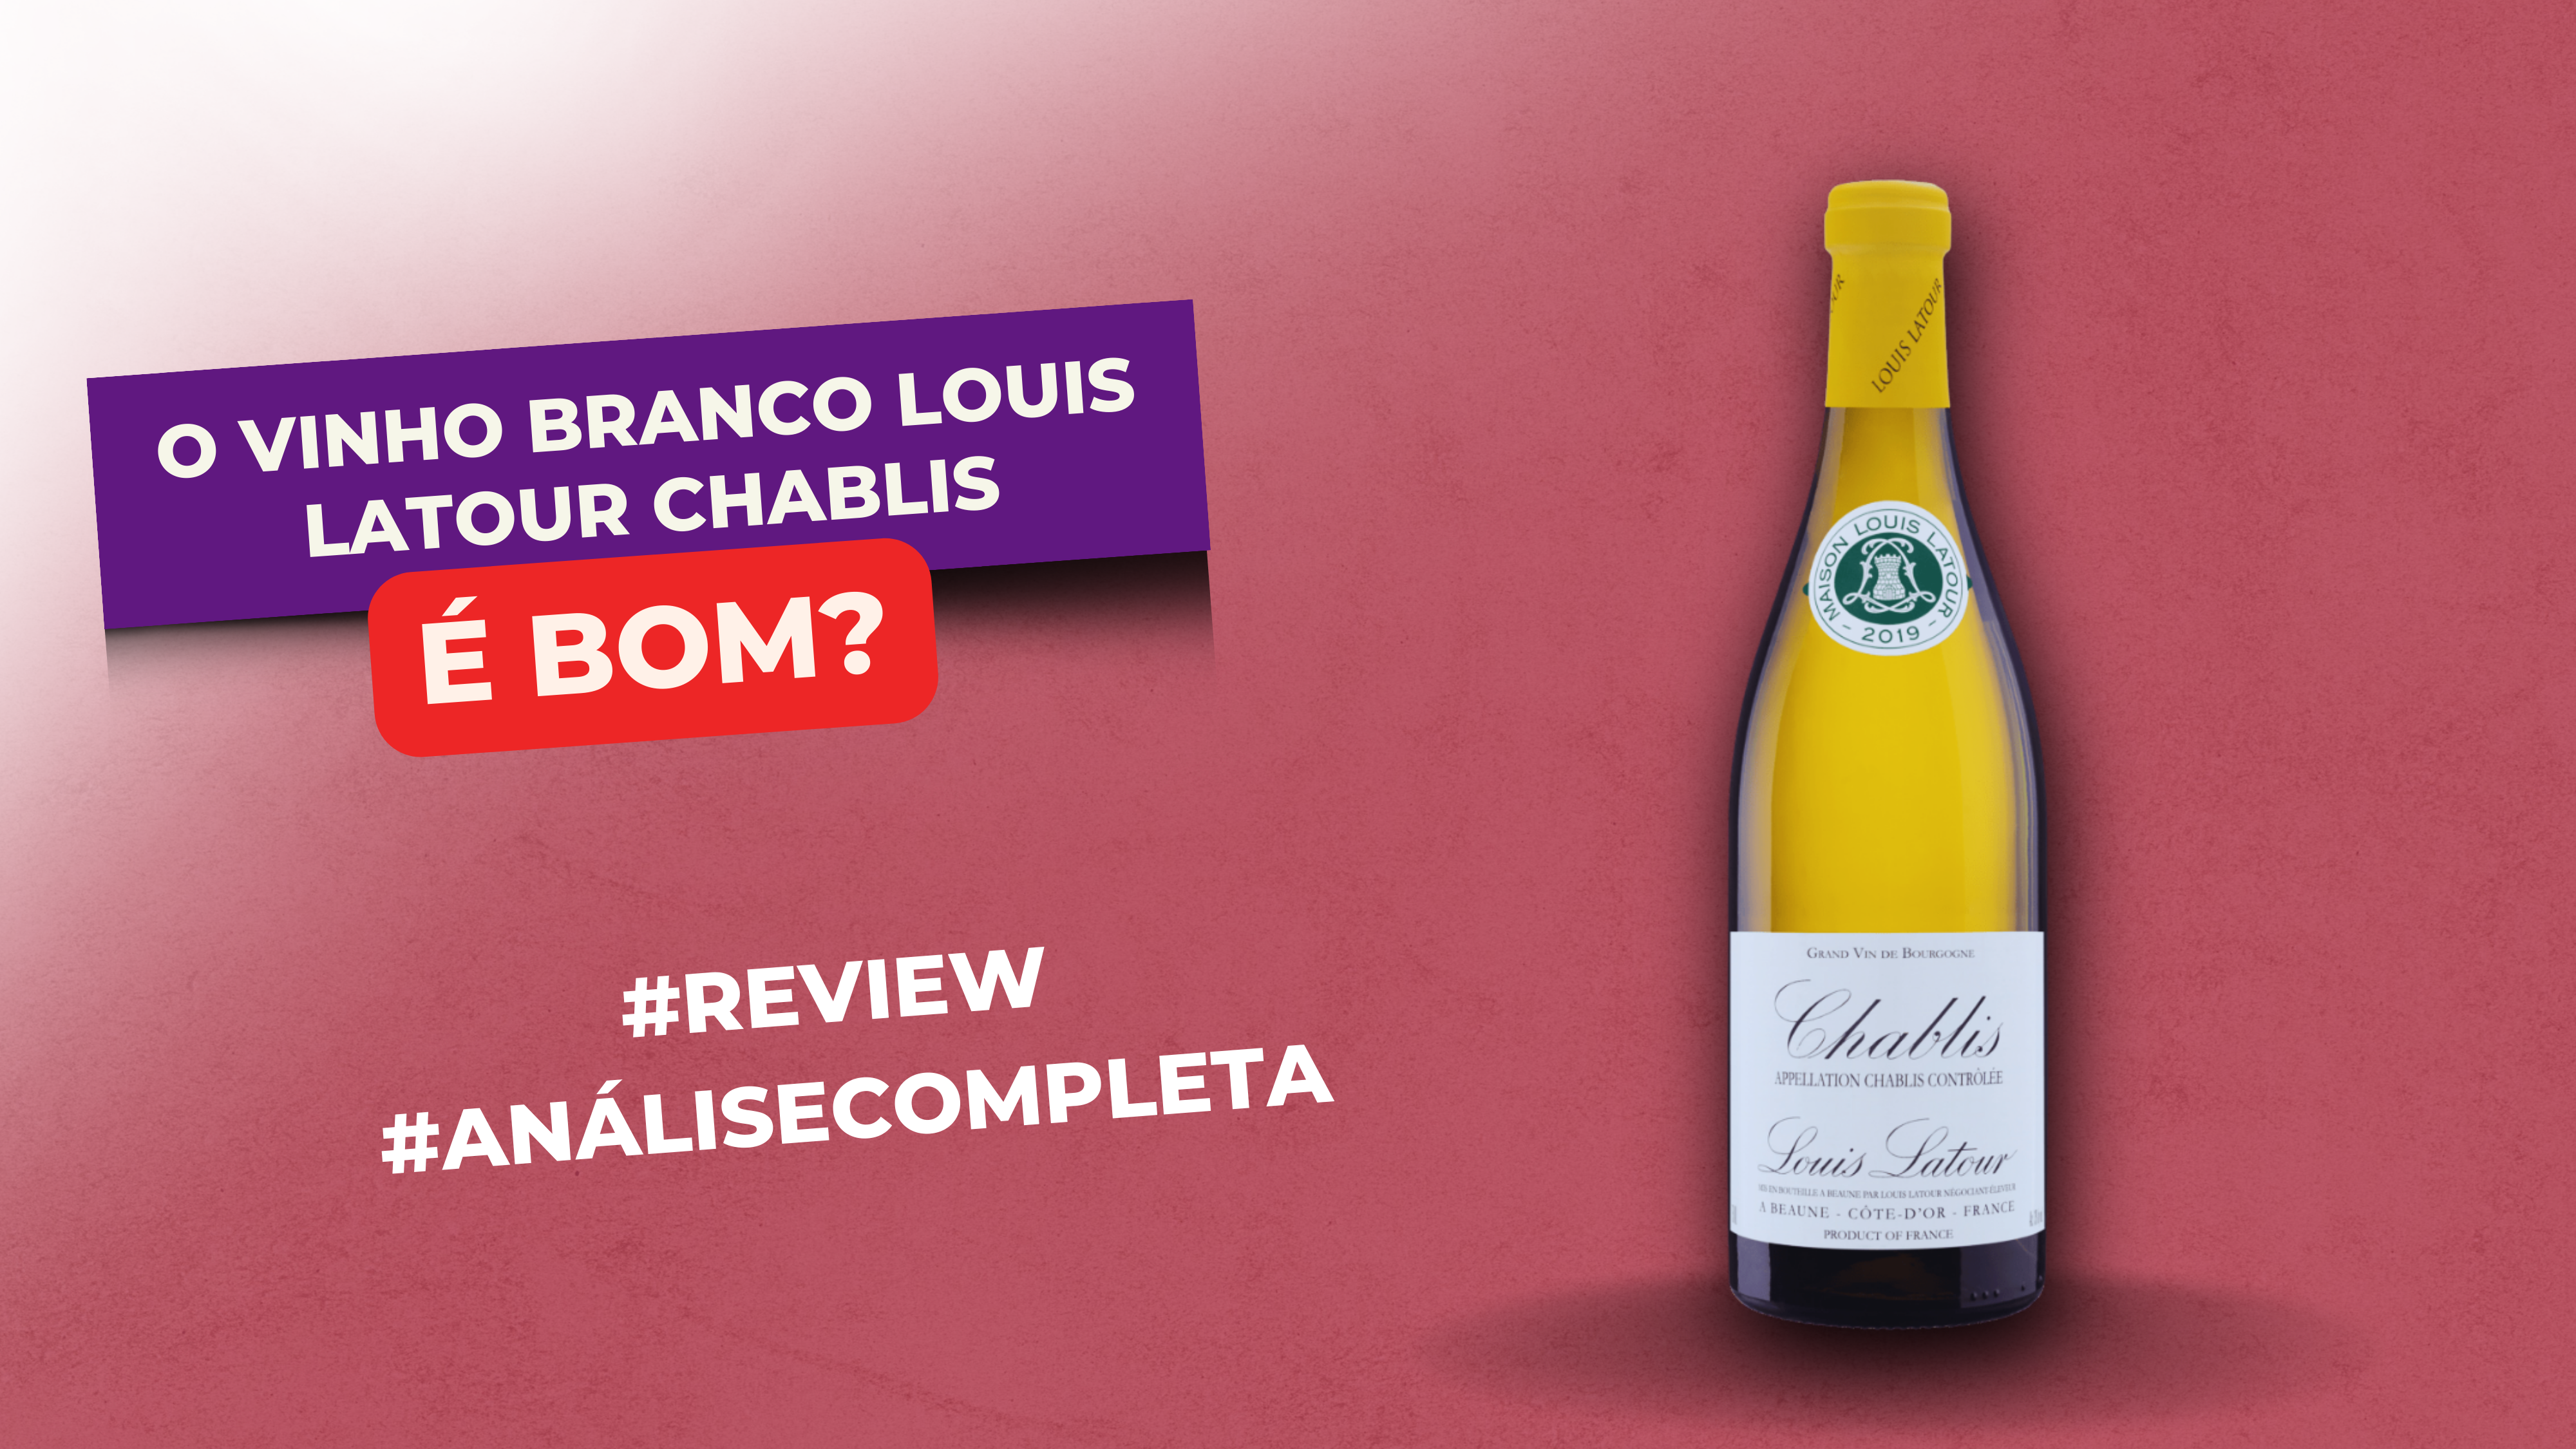 Vinho Branco Louis Latour Chablis